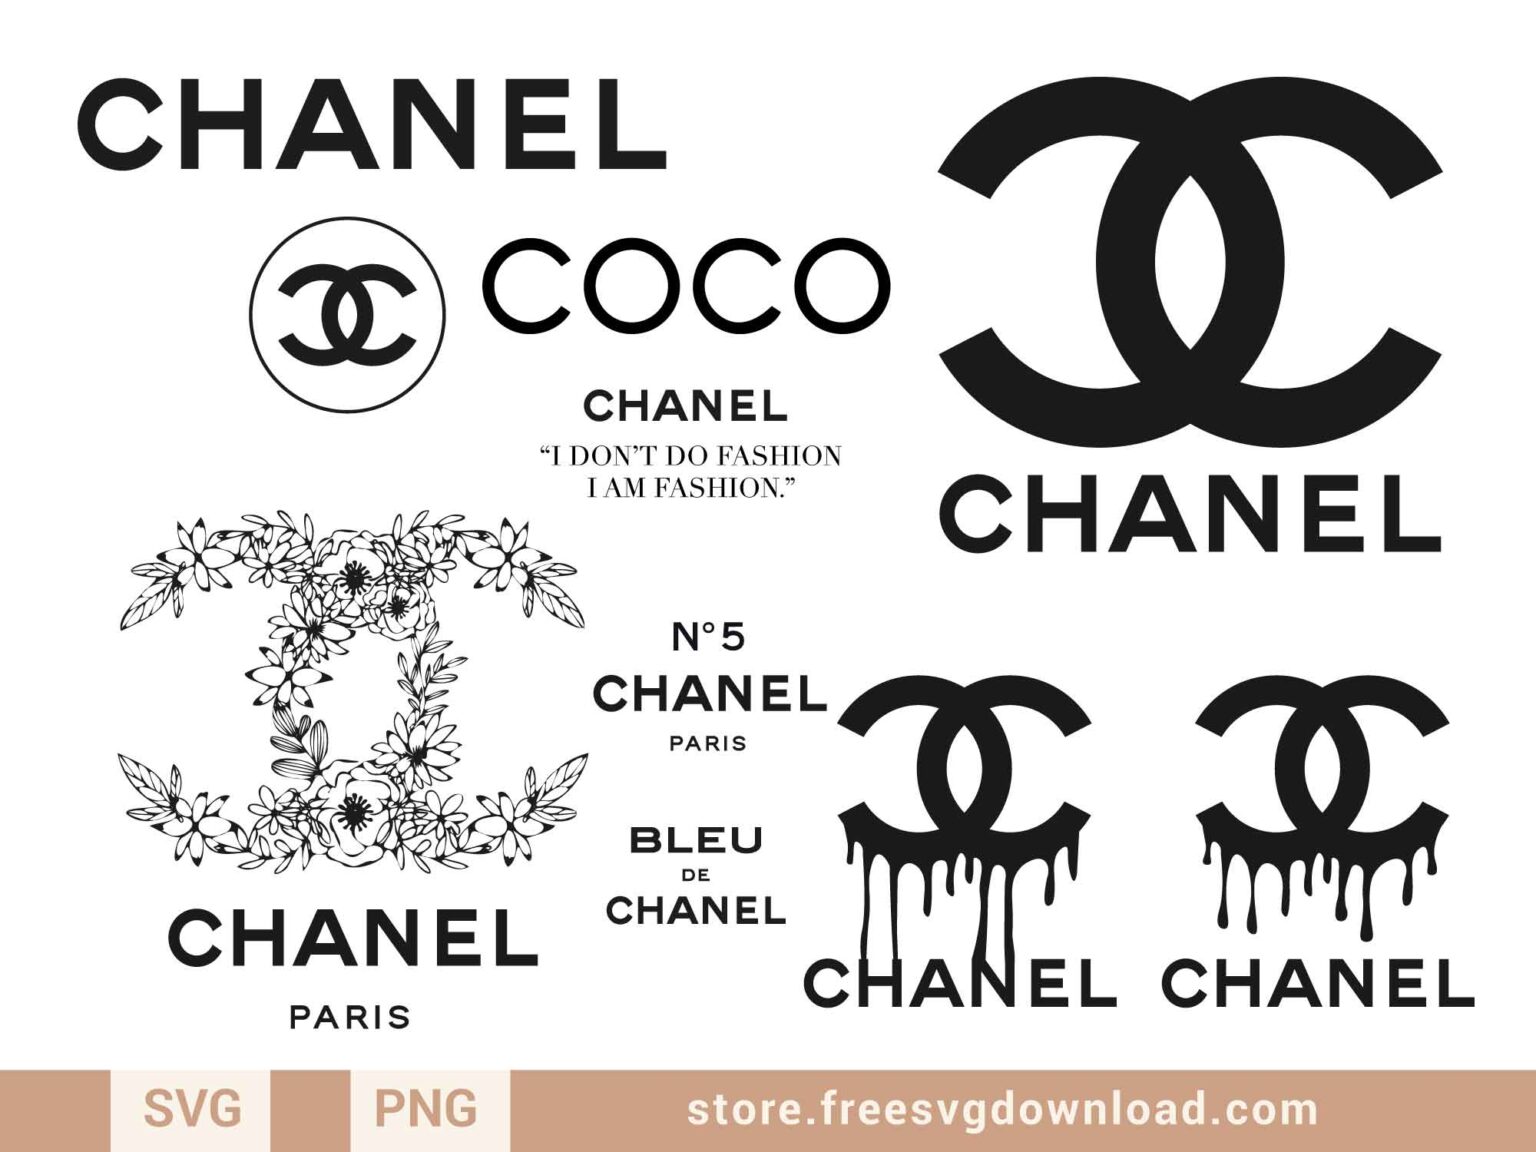 Chanel Drip Logo Nail Art Ideas - wide 2